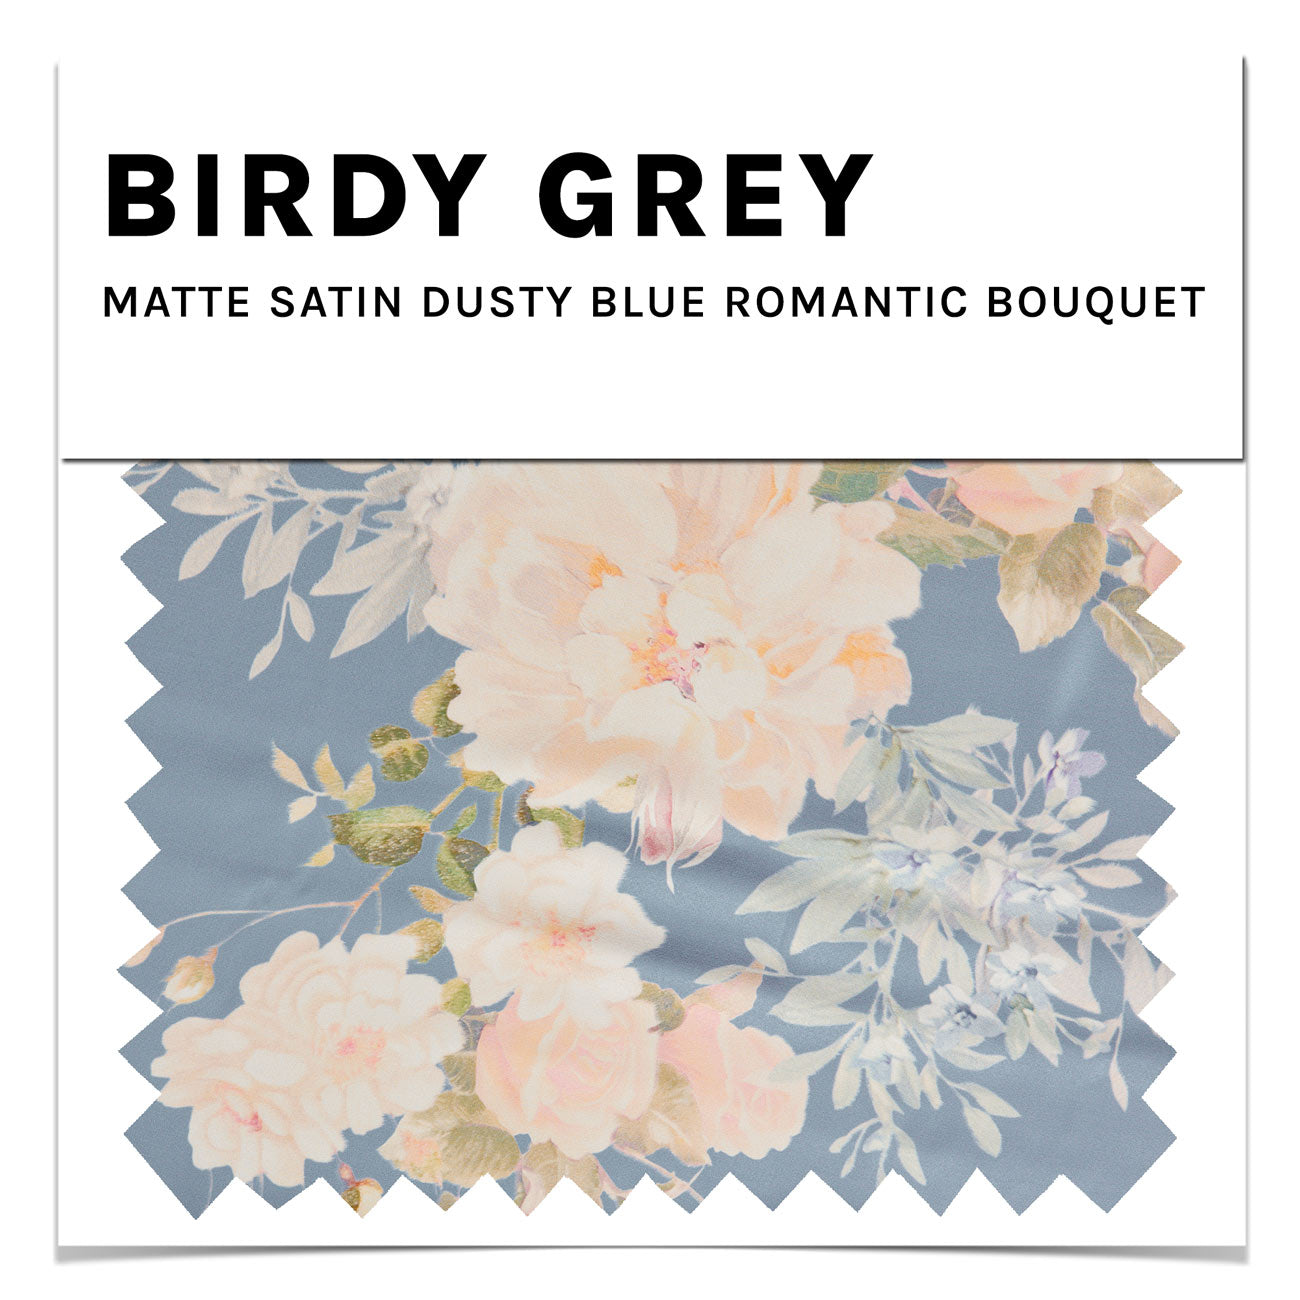 Matte Satin Swatch in Dusty Blue Romantic Bouquet by Birdy Grey